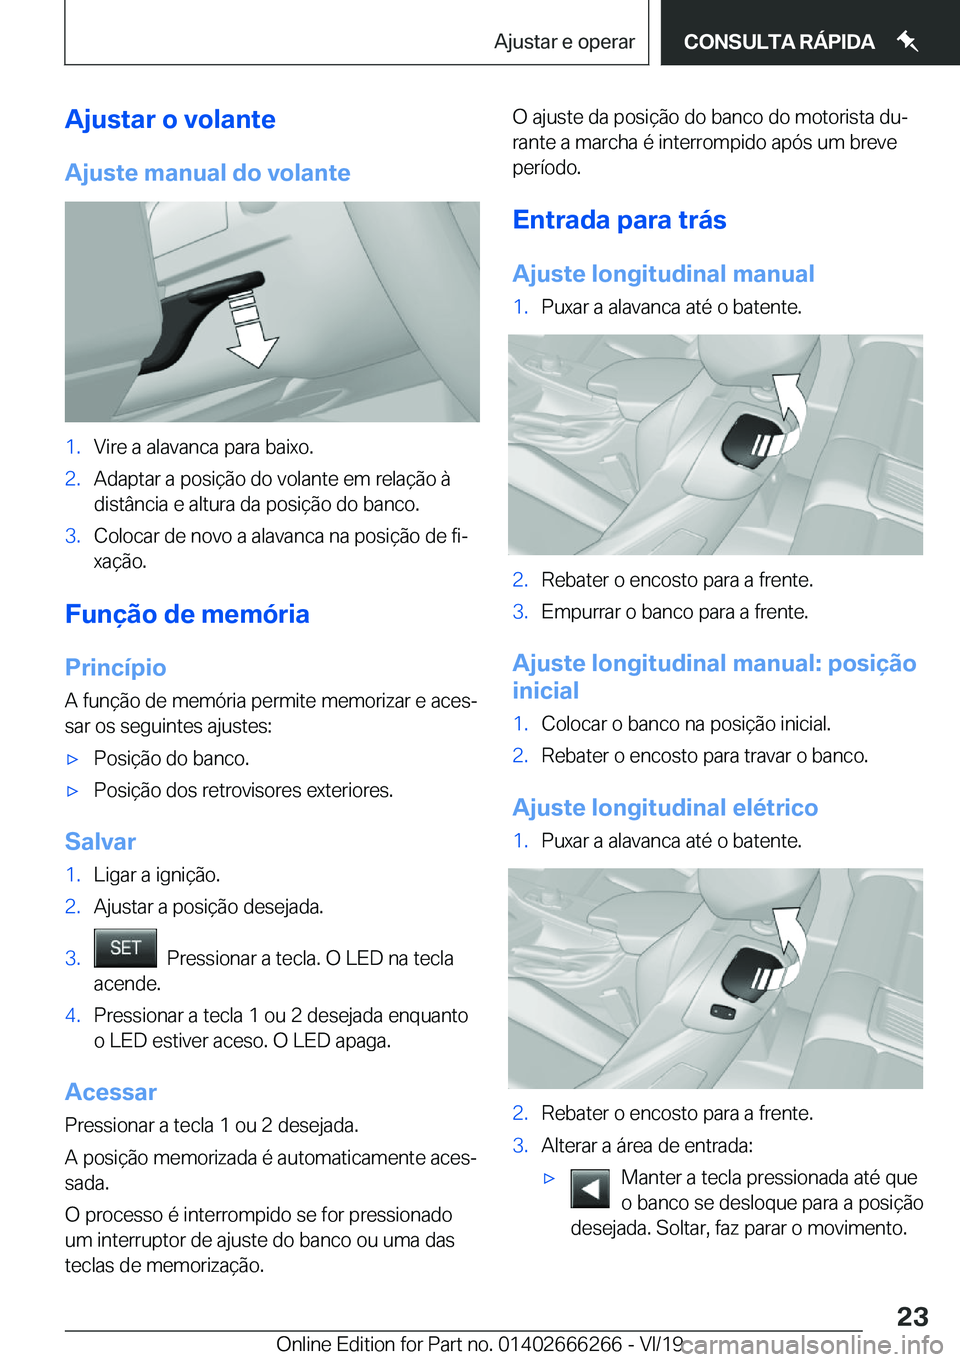 BMW 2 SERIES COUPE 2020  Manual do condutor (in Portuguese) �A�j�u�s�t�a�r��o��v�o�l�a�n�t�e
�A�j�u�s�t�e��m�a�n�u�a�l��d�o��v�o�l�a�n�t�e�1�.�V�i�r�e��a��a�l�a�v�a�n�c�a��p�a�r�a��b�a�i�x�o�.�2�.�A�d�a�p�t�a�r��a��p�o�s�i�